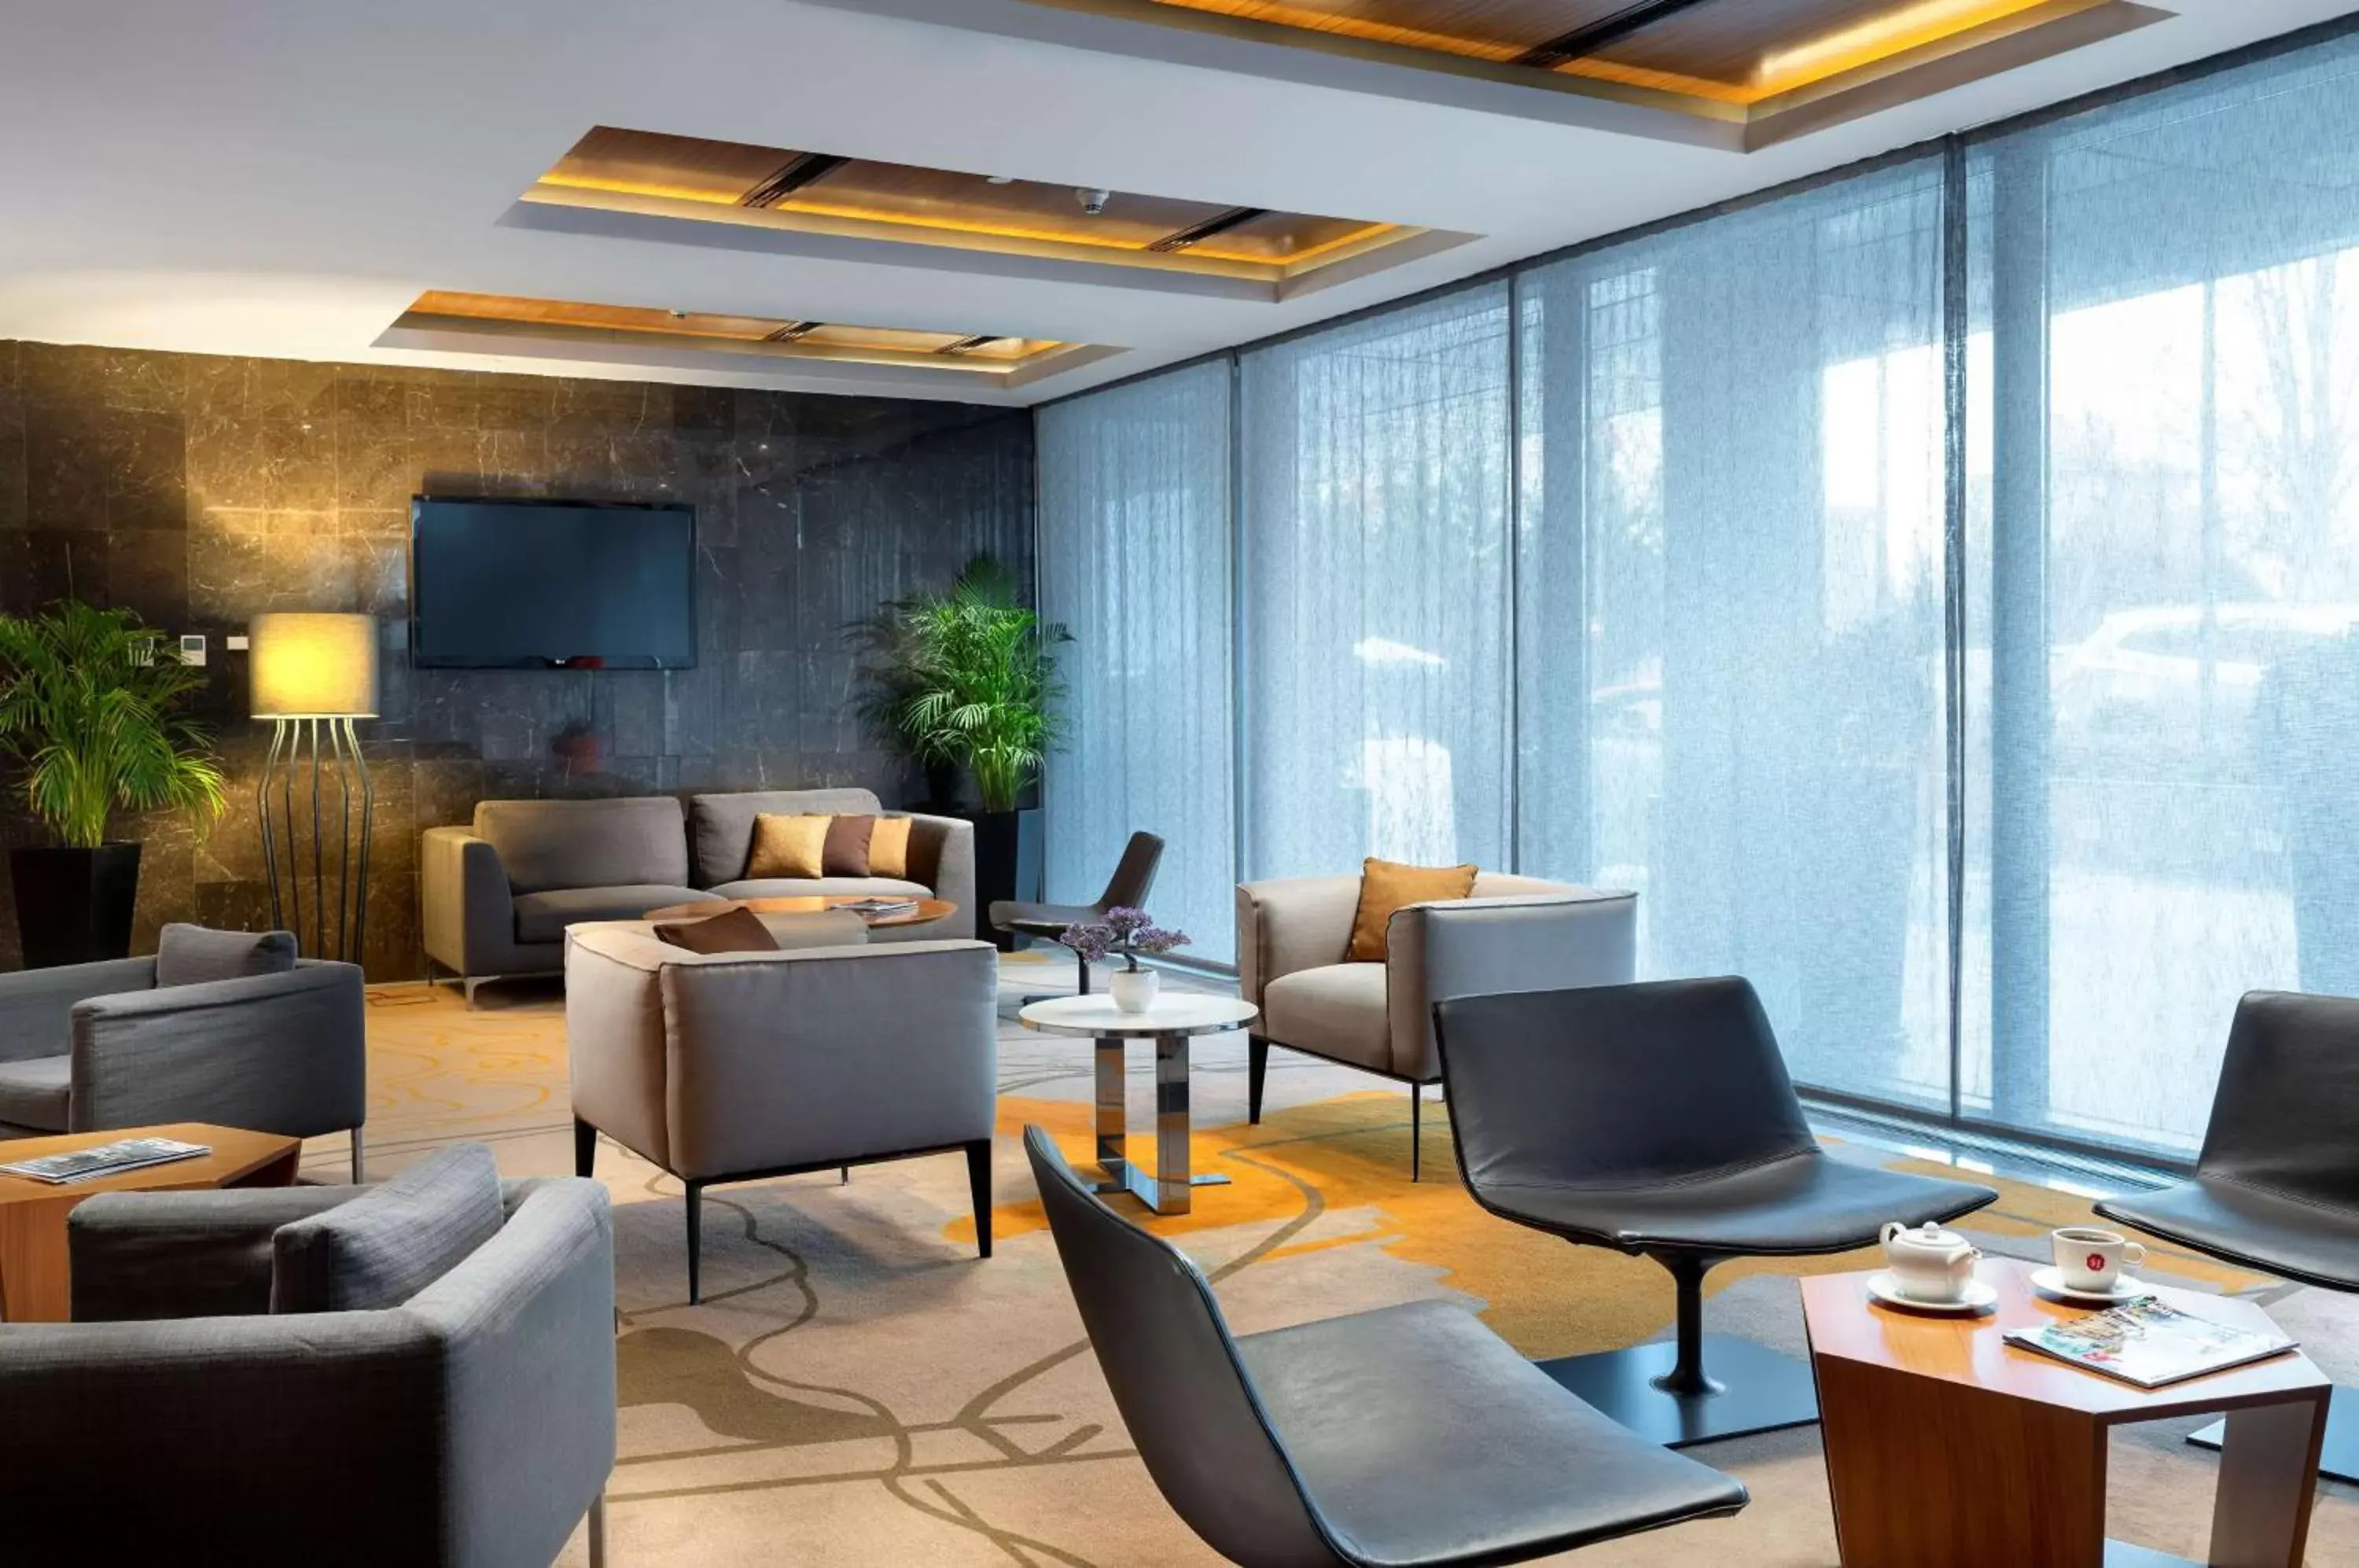 Lobby or reception in Radisson Blu Hotel Istanbul Asia